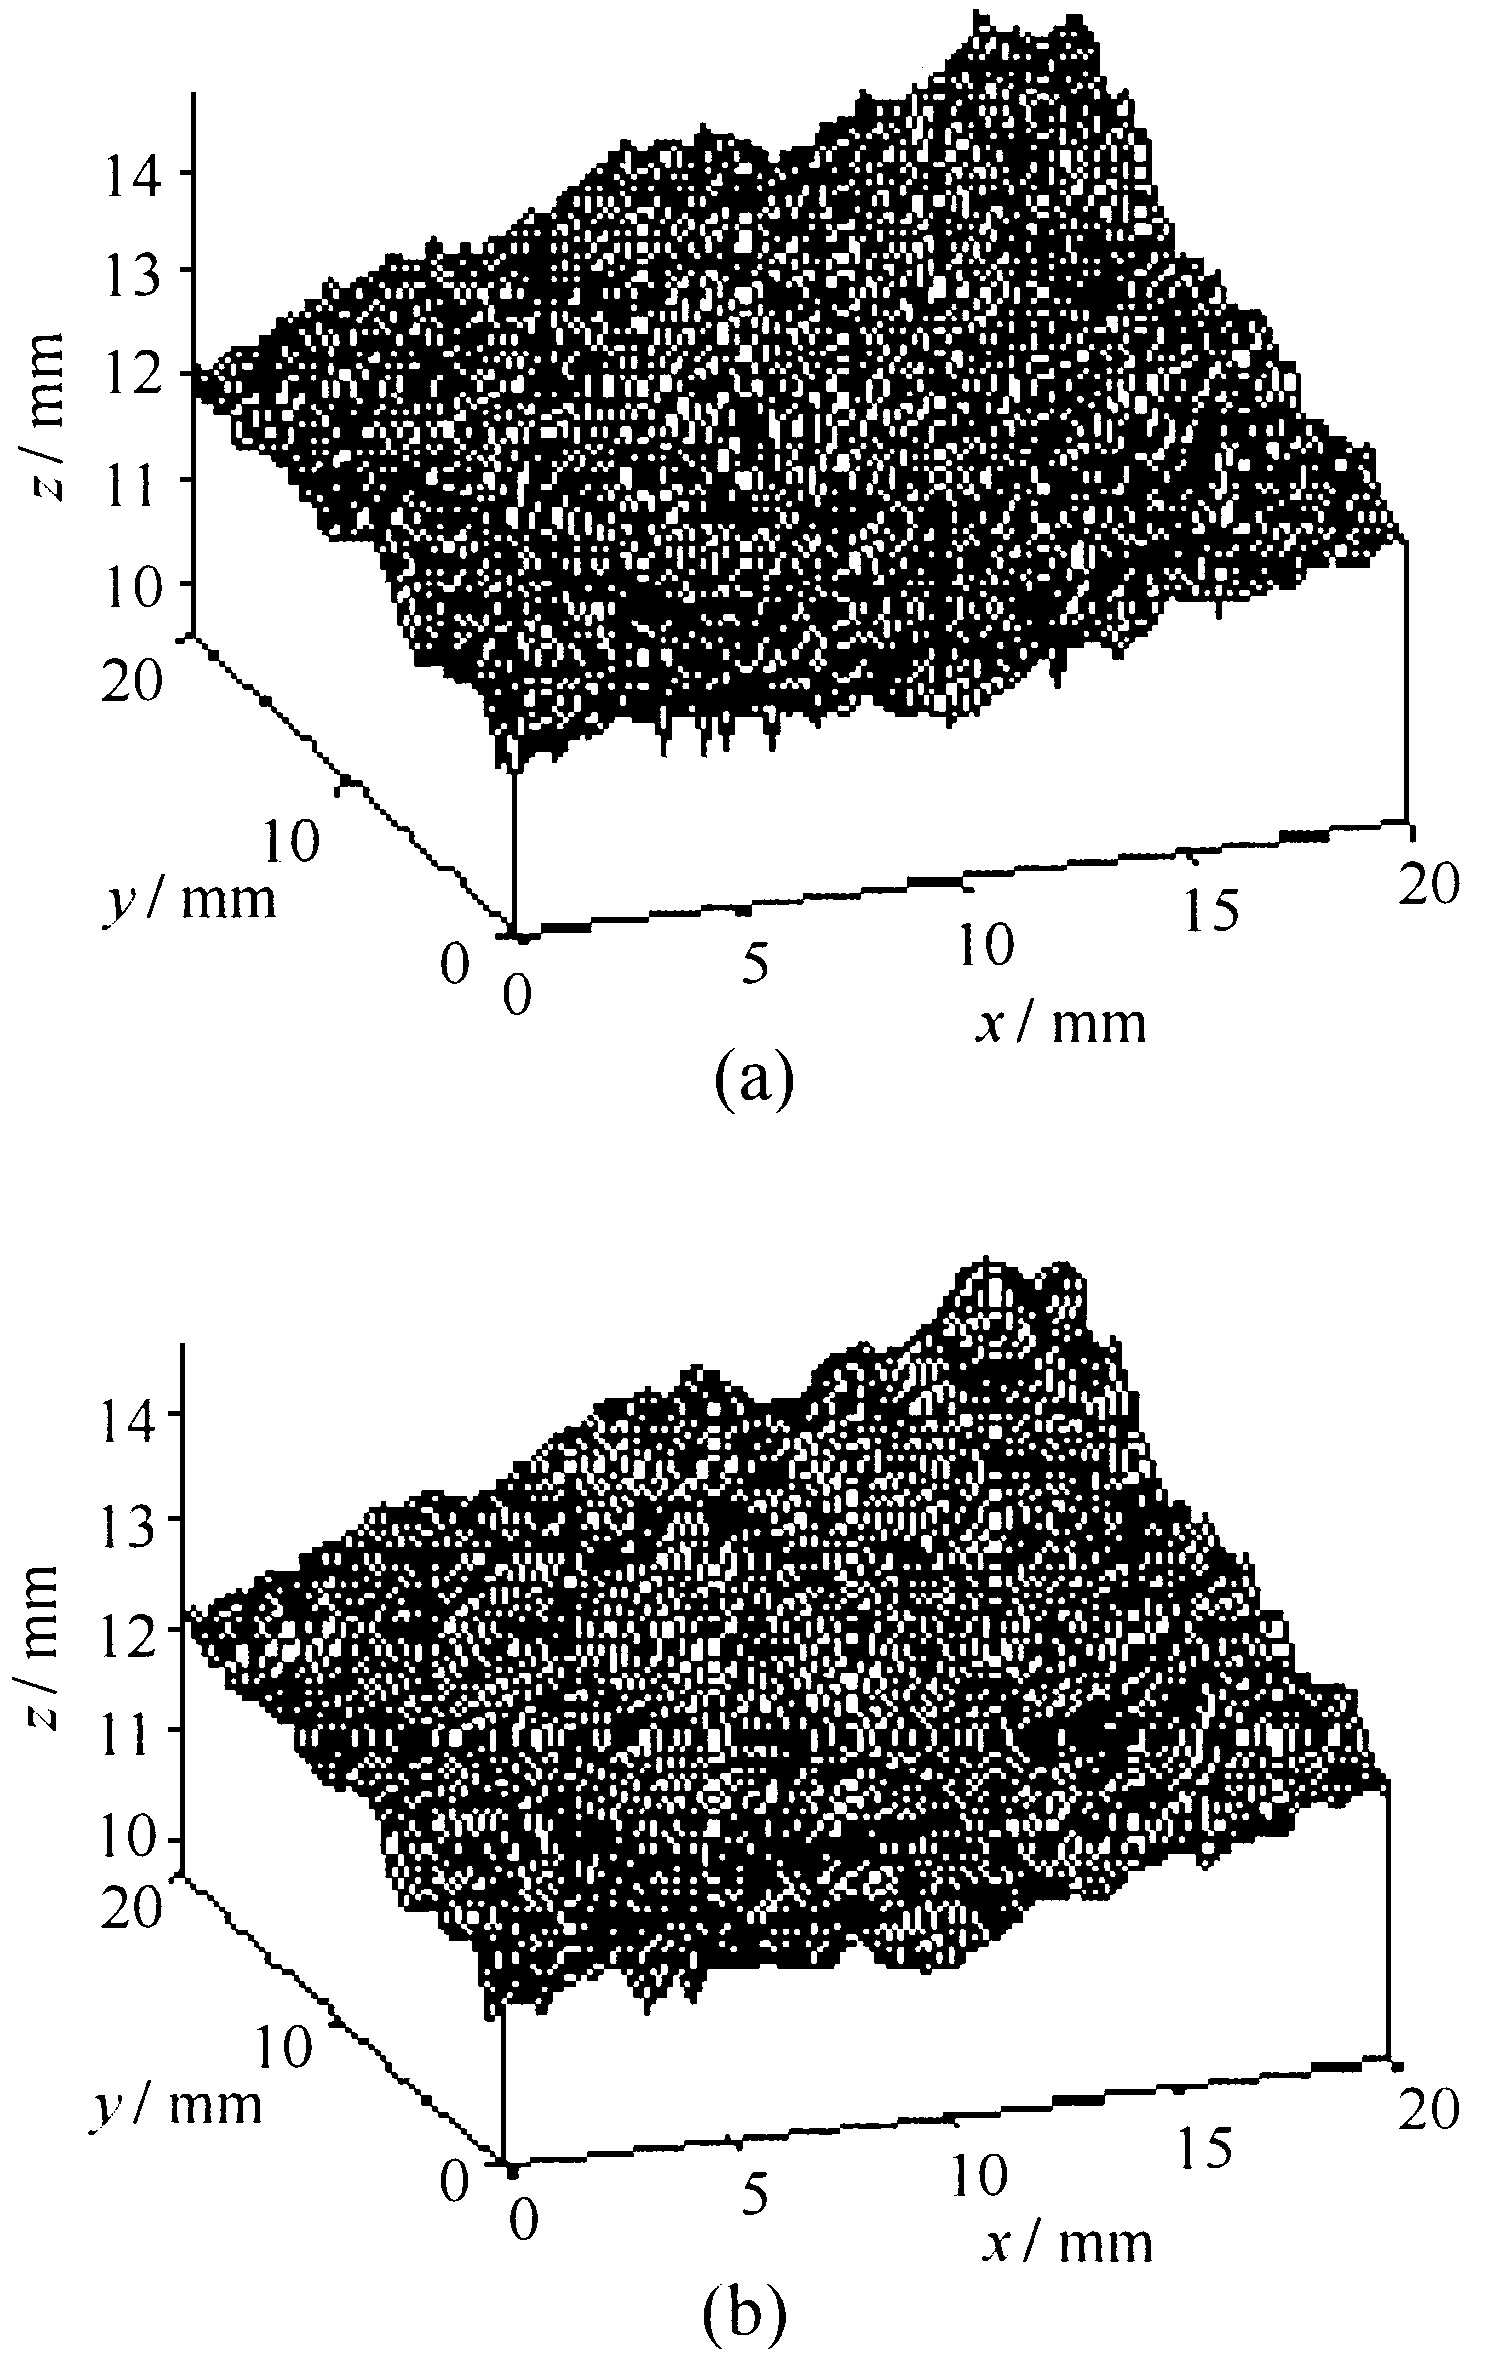 图6 激光扫描获得的真实表面 (a) 和根据25 % 信息用分形插值生成的节理表面形貌 (b)